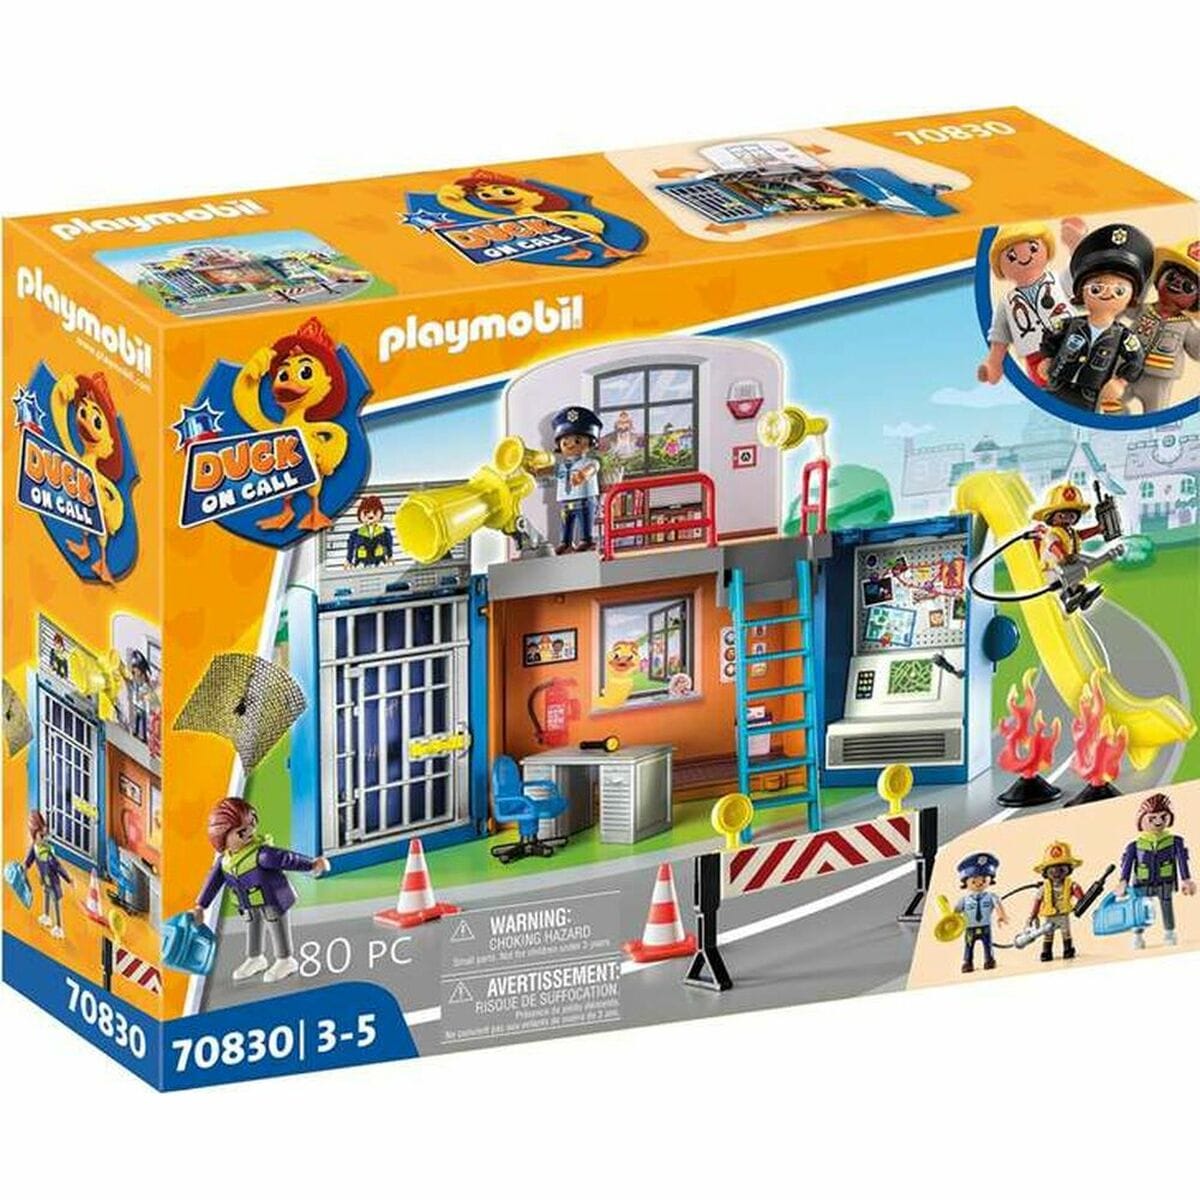 Playmobil Spielzeug | Kostüme > Spielzeug und Spiele > Weiteres spielzeug Playset Playmobil Duck on Call Polizei Die Basisstation 70830 (70 pcs)